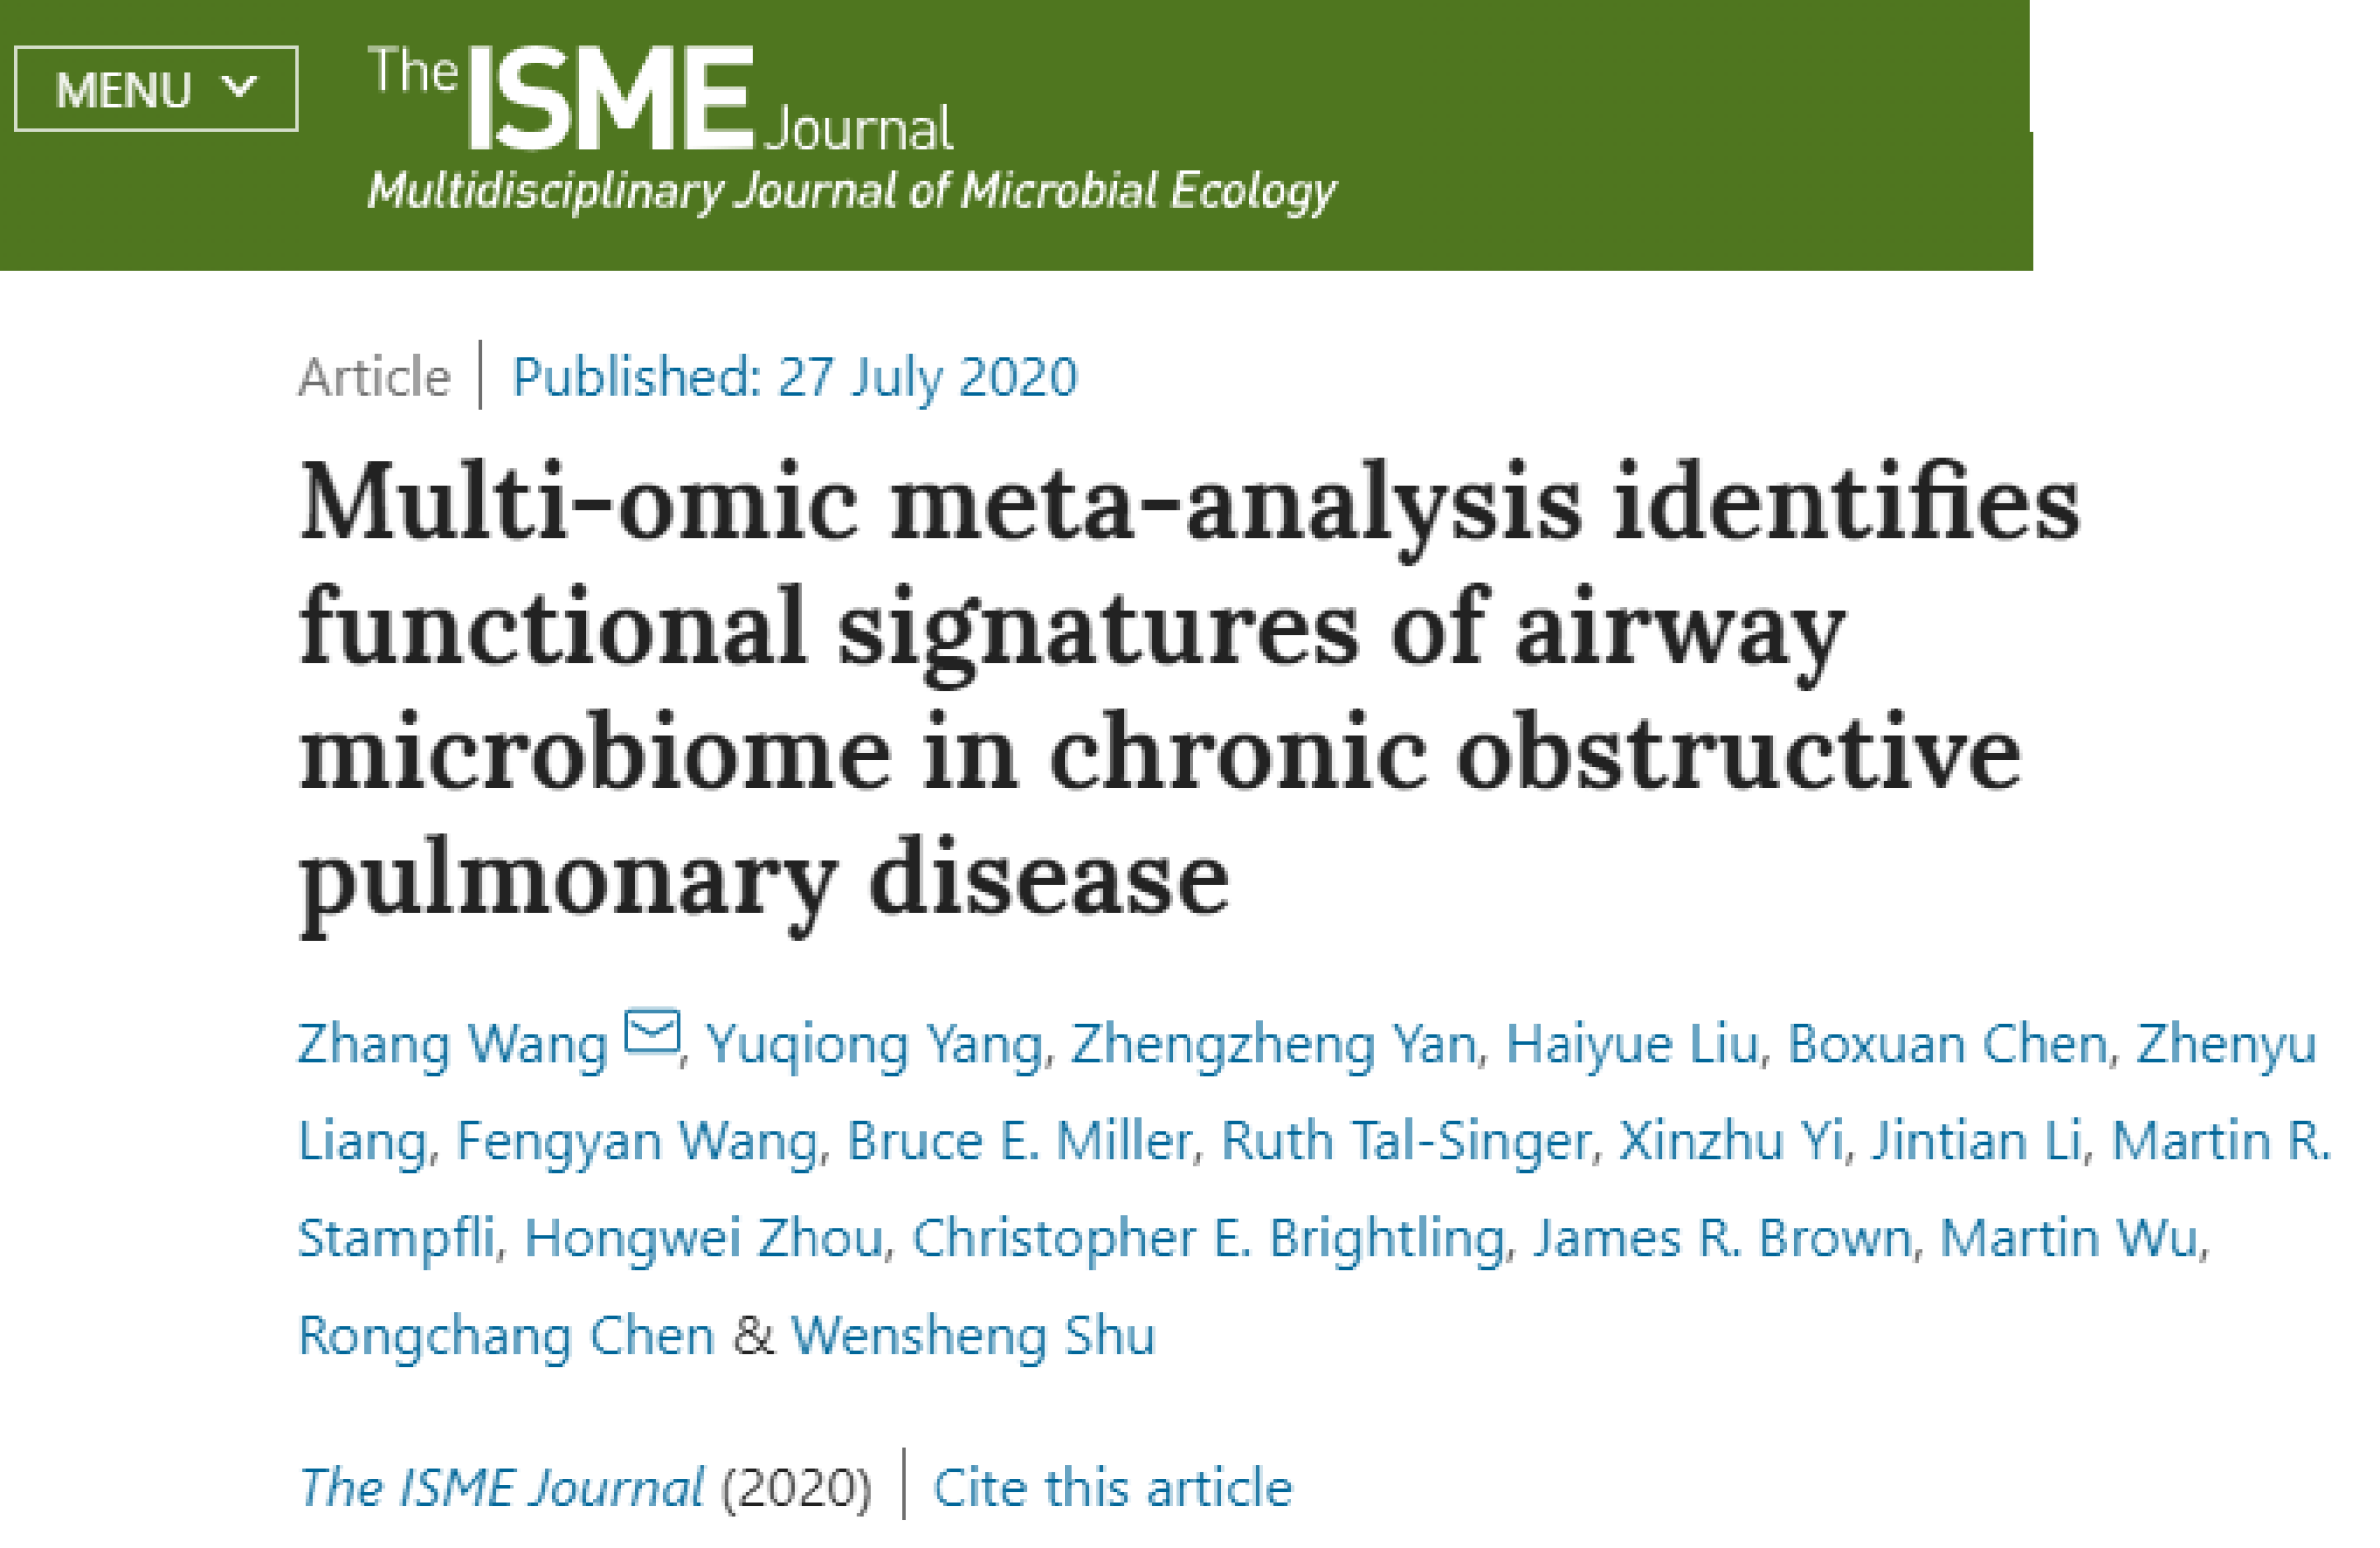 我院王璋研究员团队及其合作者揭示慢性阻塞性肺疾病气道微生物组与宿主的互作机制